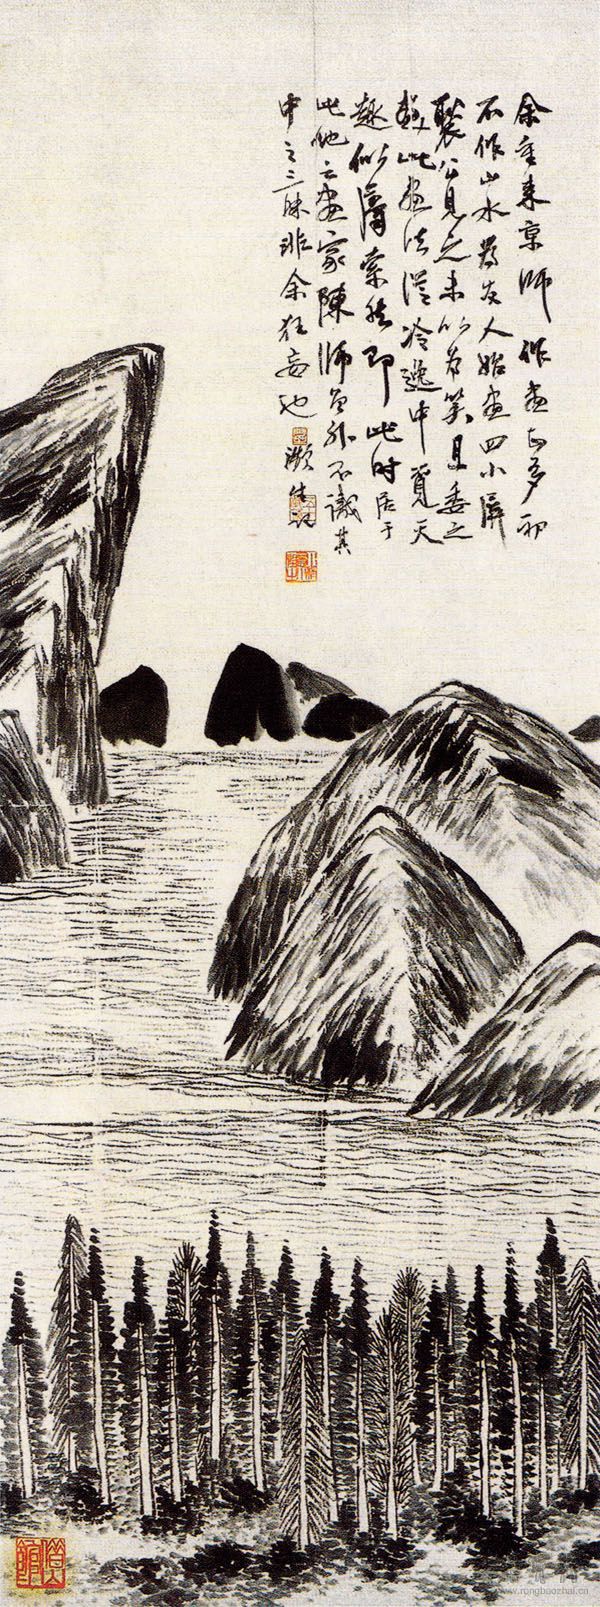 图4 齐白石 山水北京市文物公司旧藏